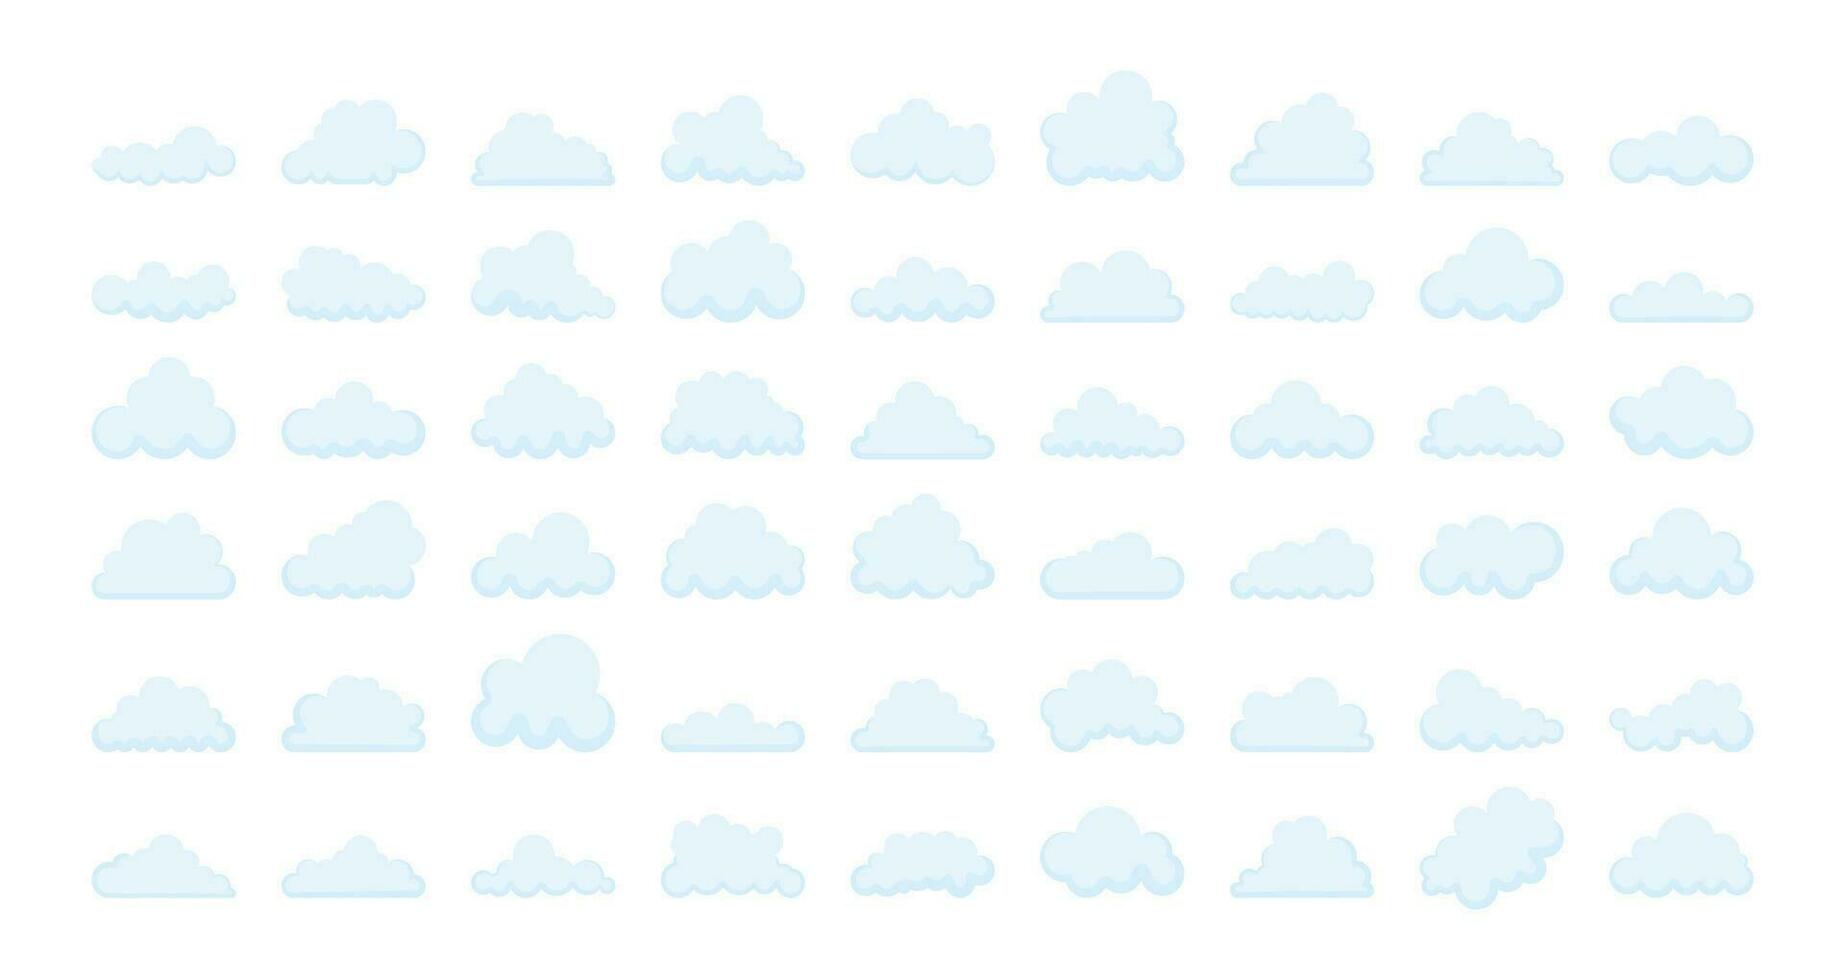 reeks van wolken silhouetten. abstract wit bewolkt set. vector voorraad illustratie